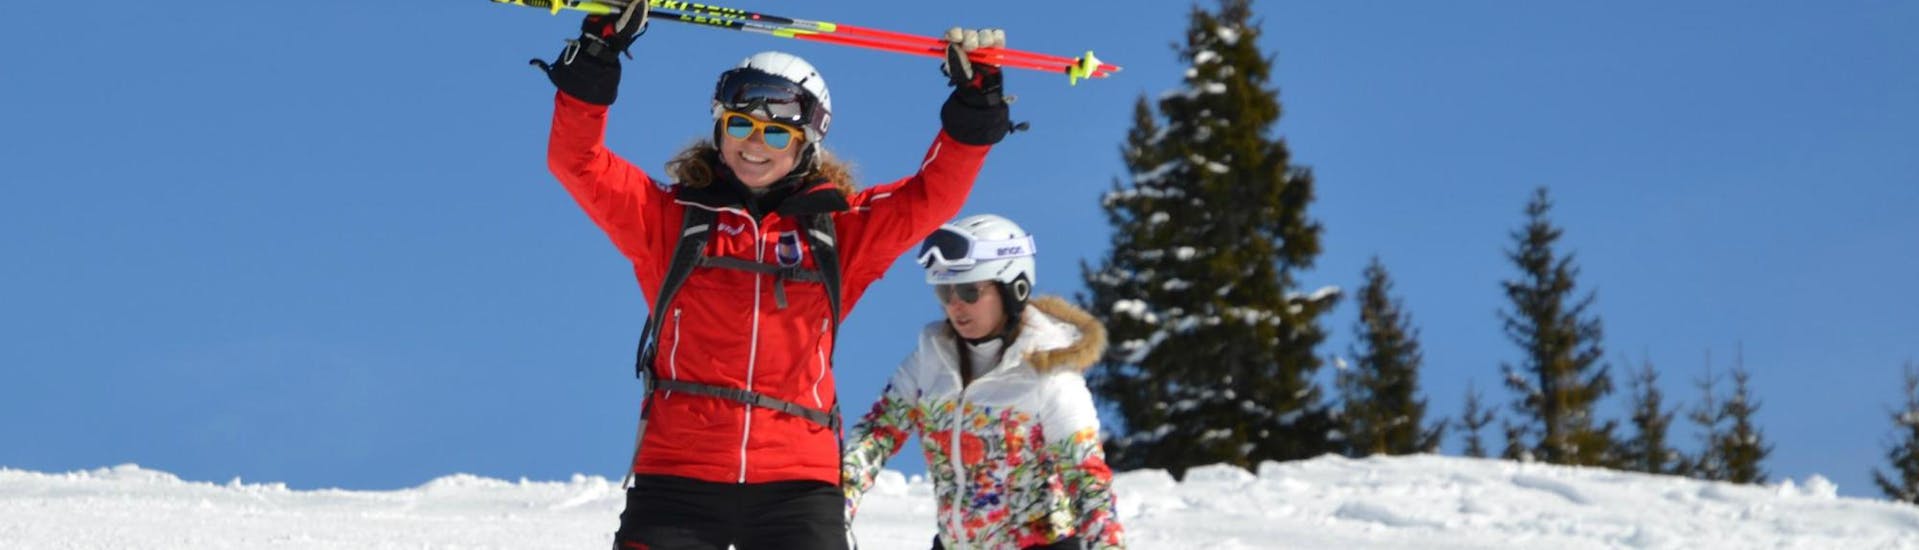 Lezioni di sci per adulti principianti assoluti con Skischule Kitzbühel Rote Teufel.